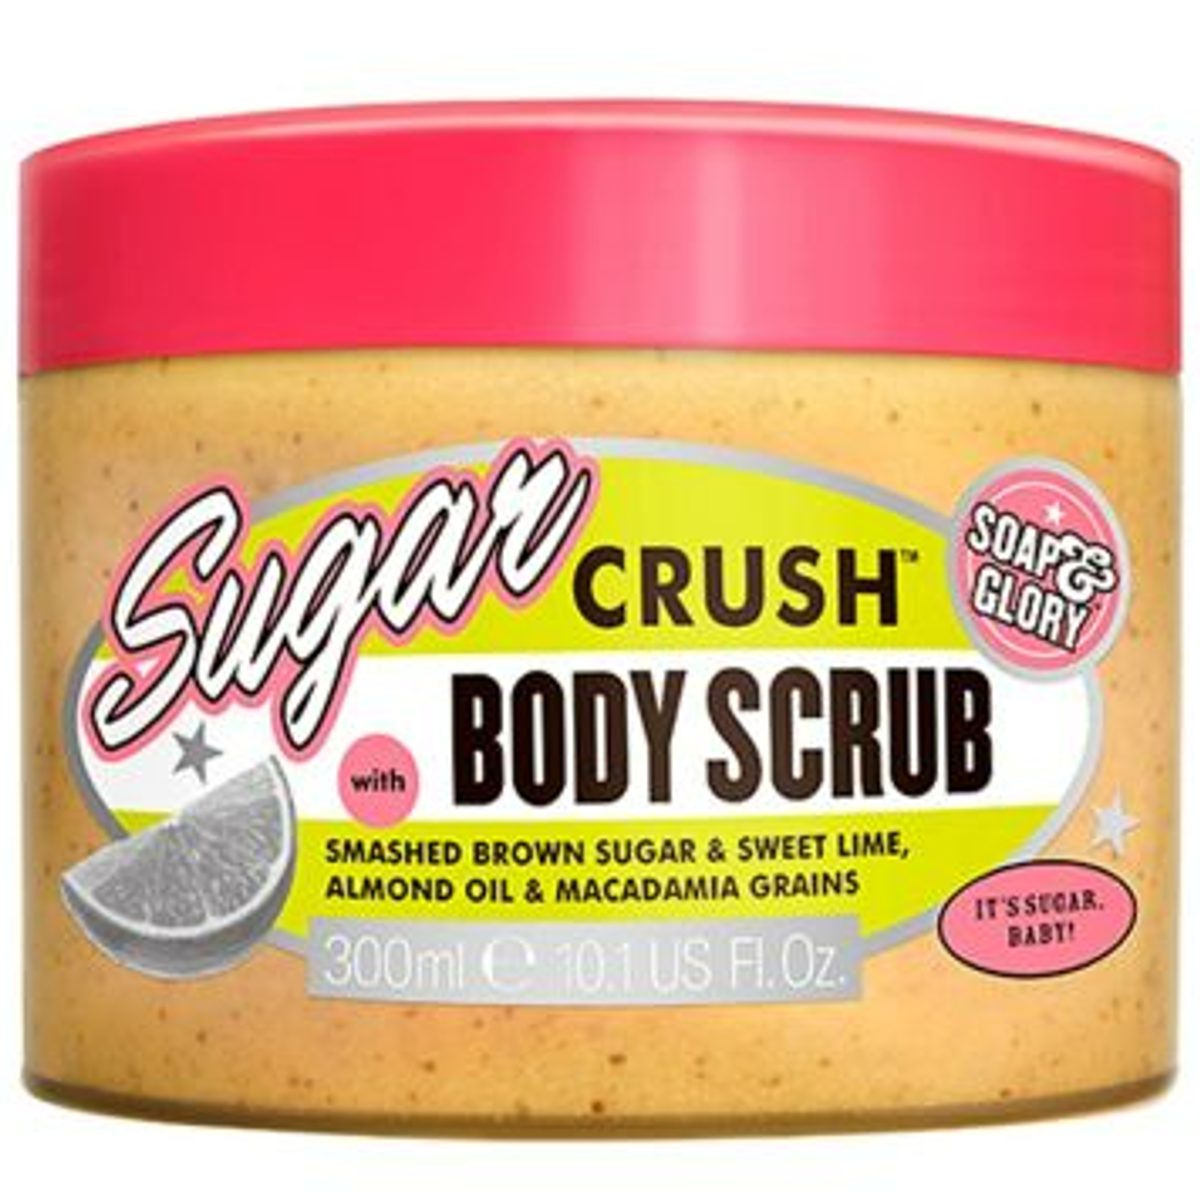 SUGAR CRUSH™ BODY SCRUB - 300 ML